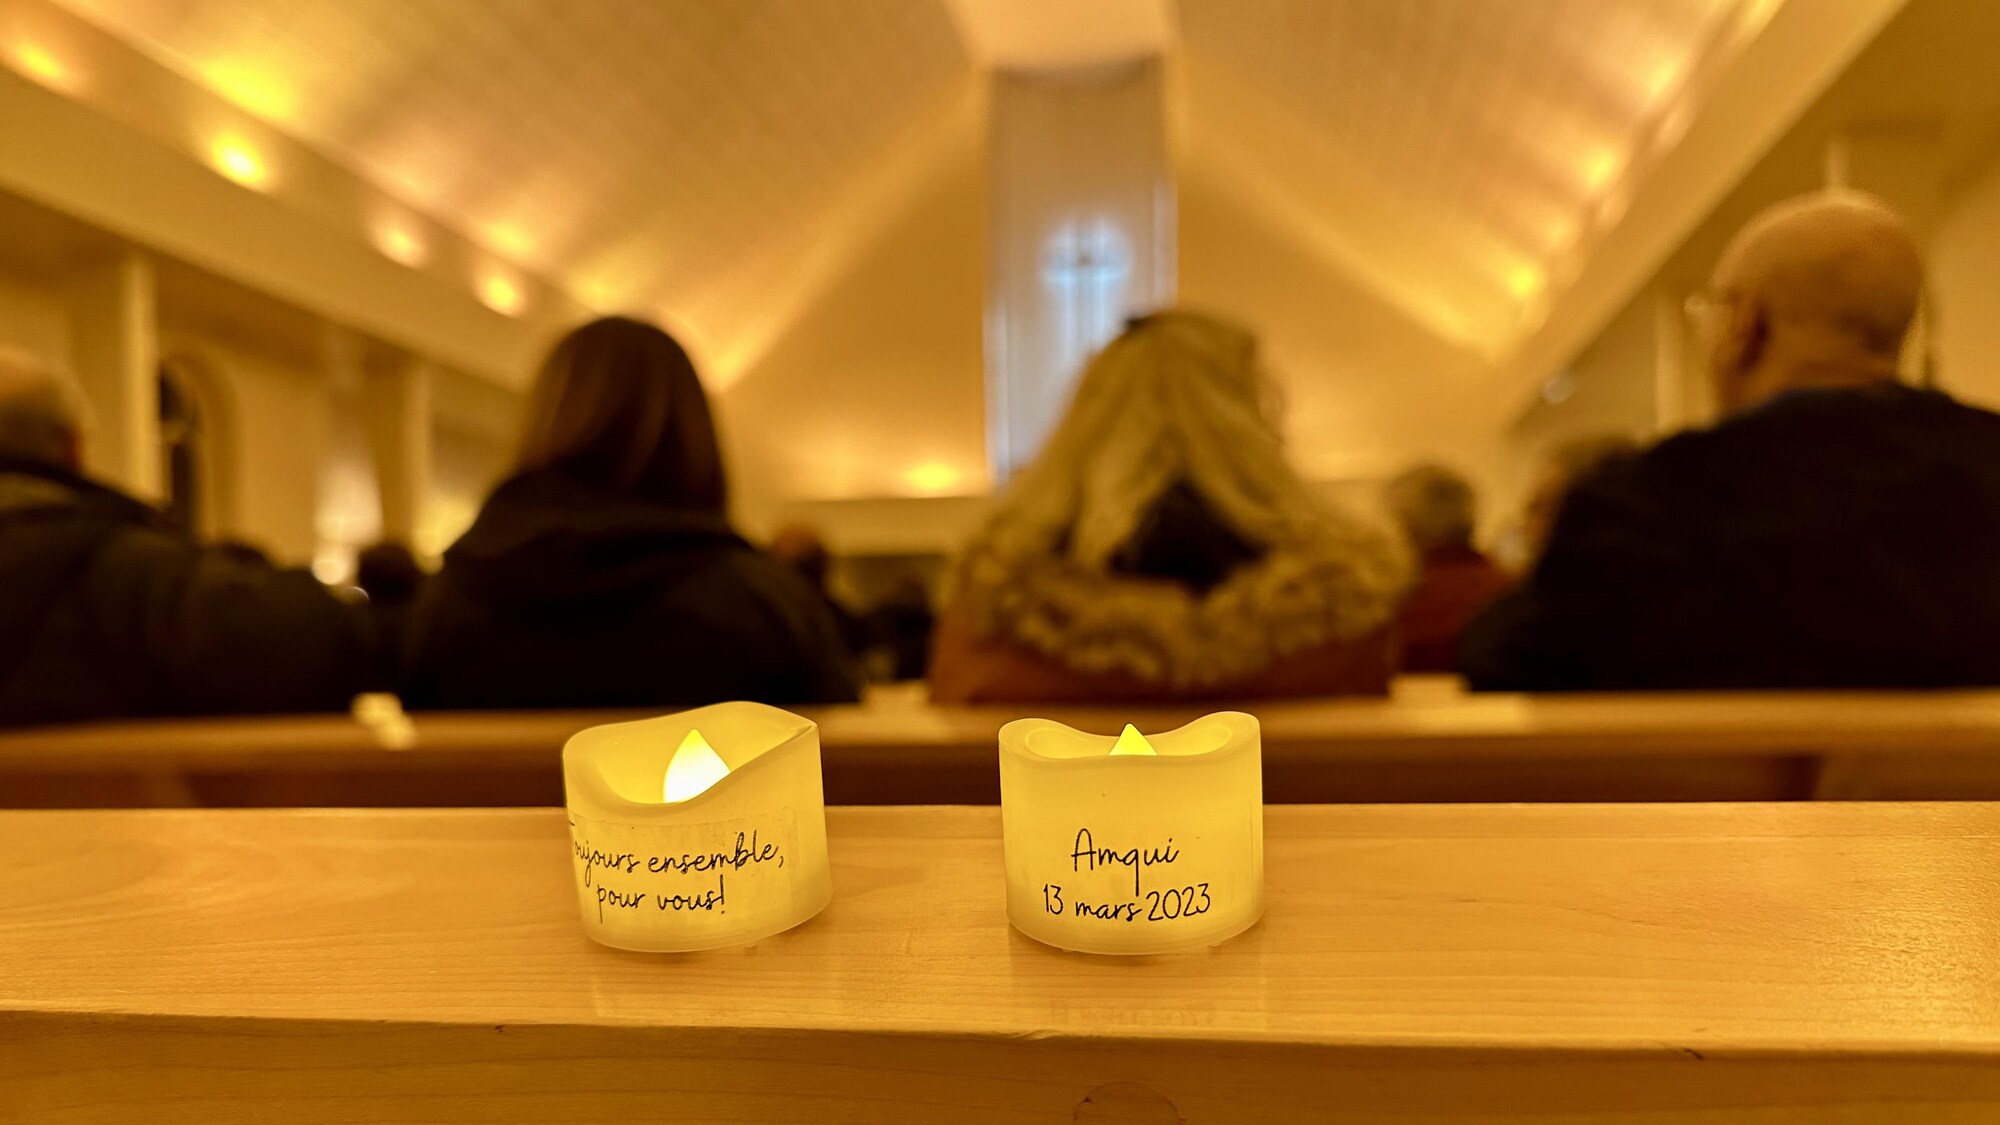 Deux chandelles dans l'église où il est écrit : Toujours ensemble, pour vous! Amqui, 13 mars 2023.